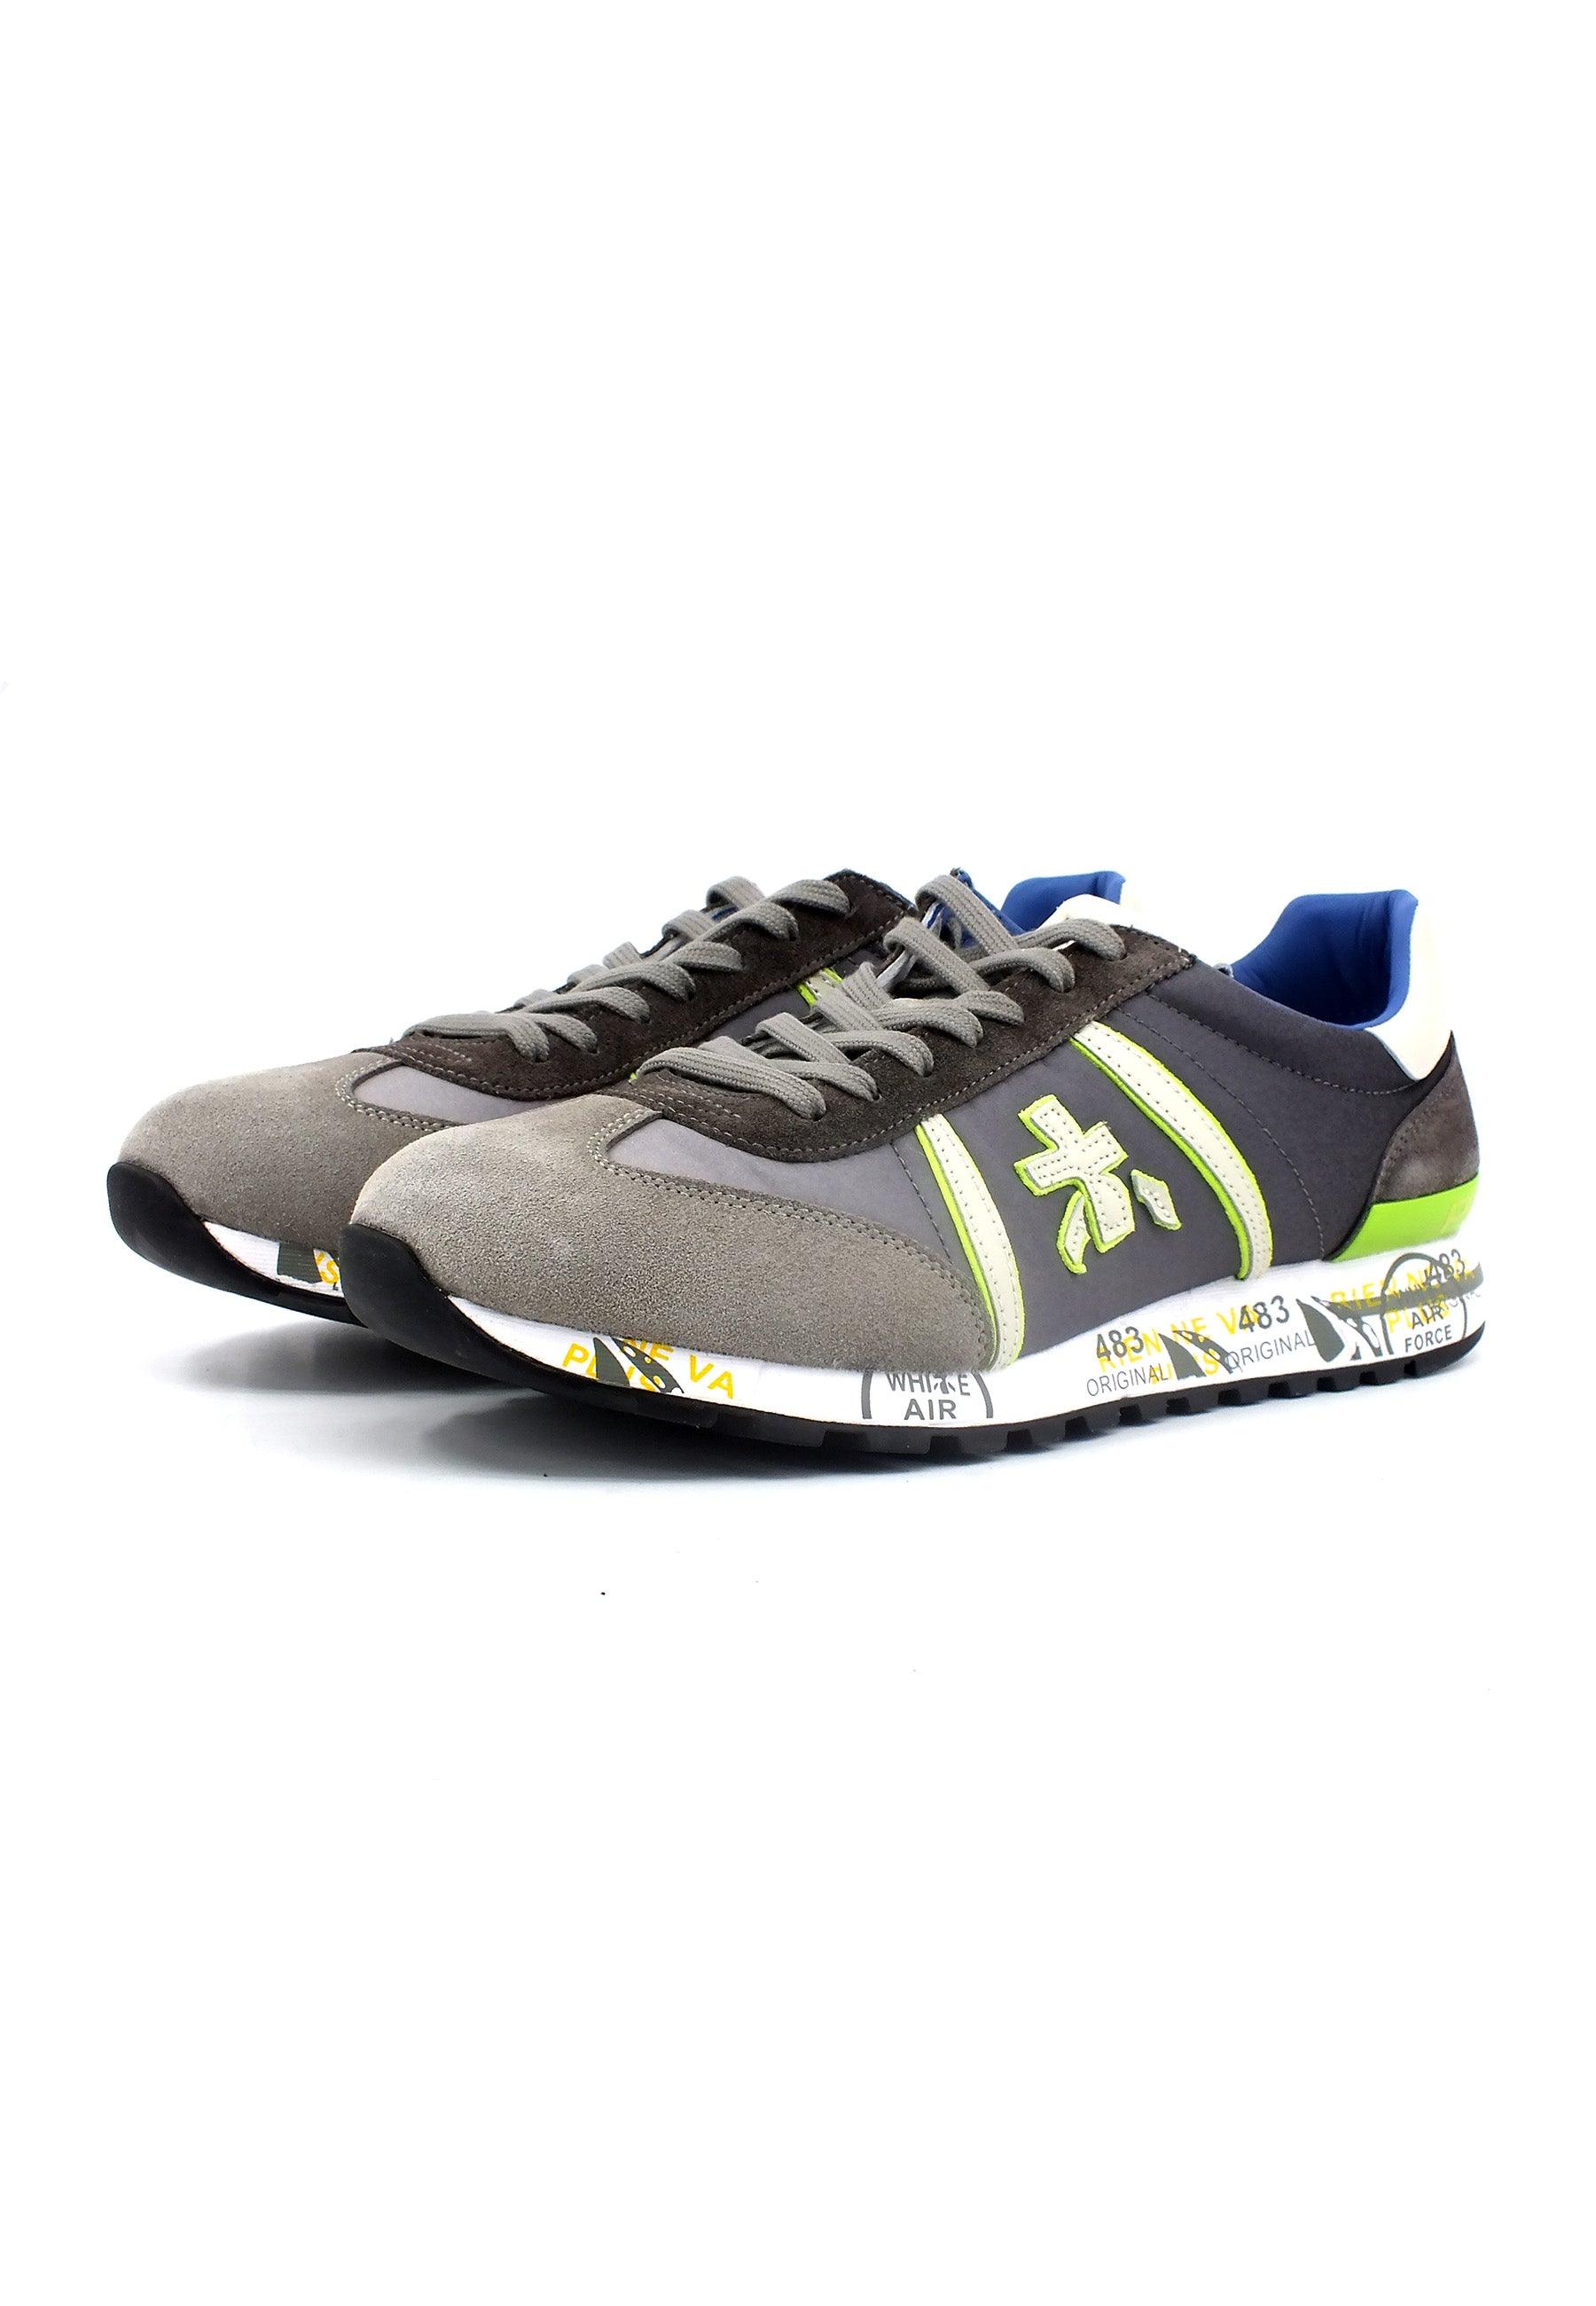 PREMIATA Sneaker Uomo Grey Yellow Fluo LUCY-5903 - Sandrini Calzature e Abbigliamento